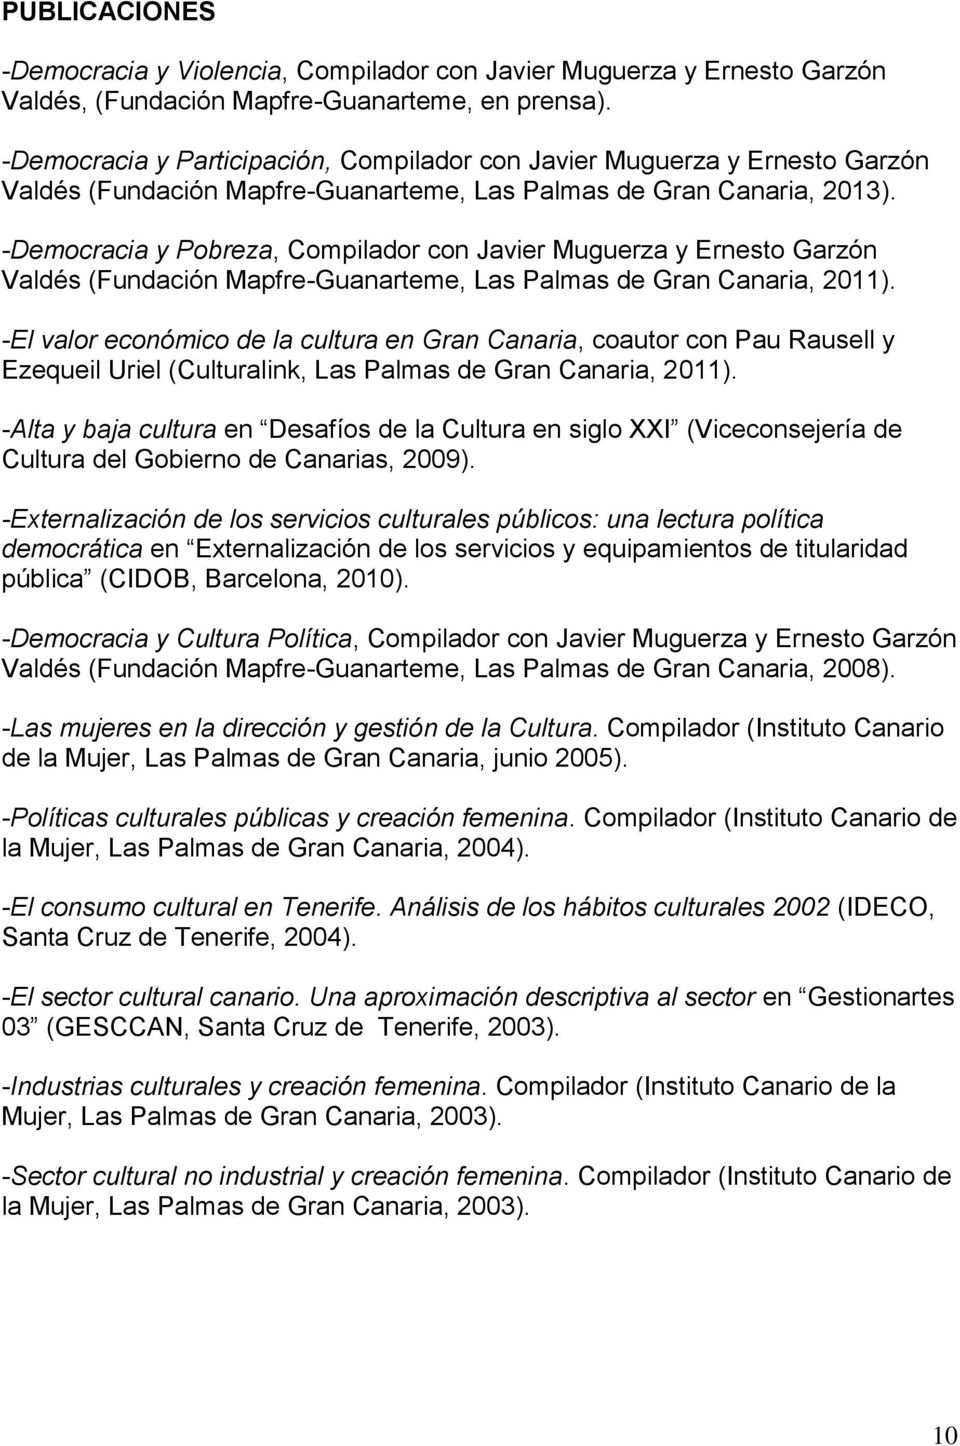 -Democracia y Pobreza, Compilador con Javier Muguerza y Ernesto Garzón Valdés (Fundación Mapfre-Guanarteme, Las Palmas de Gran Canaria, 2011).